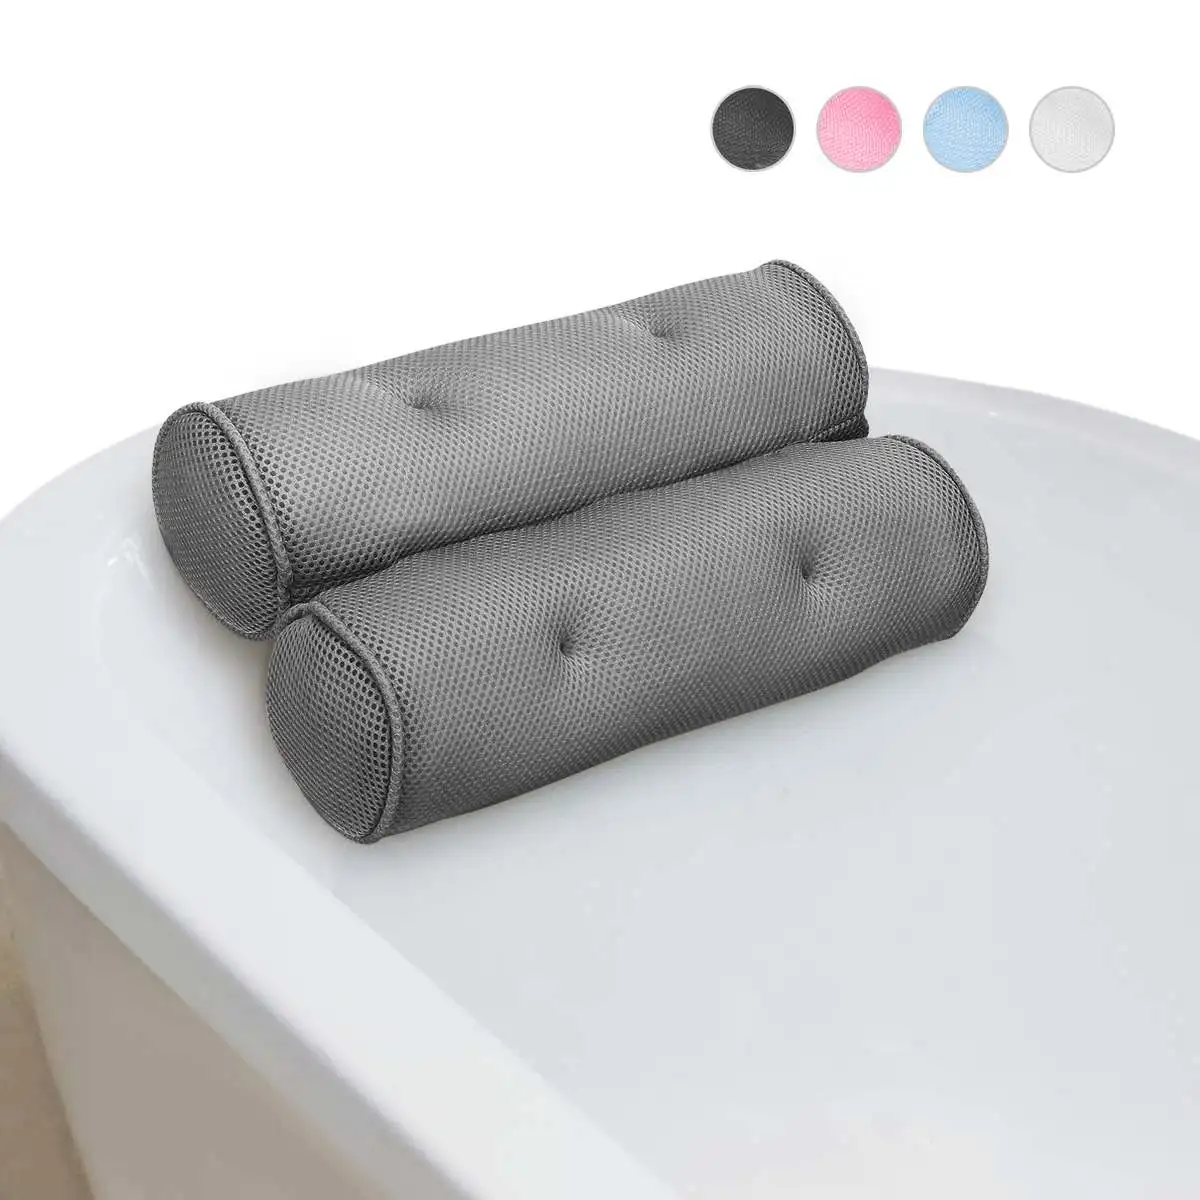 

4 цвета Подушка для ванны с присосками шеи Поддержка подушка для ванны из дышащего материала 3D сетки подушку спа ванна Ванная комната Accersory